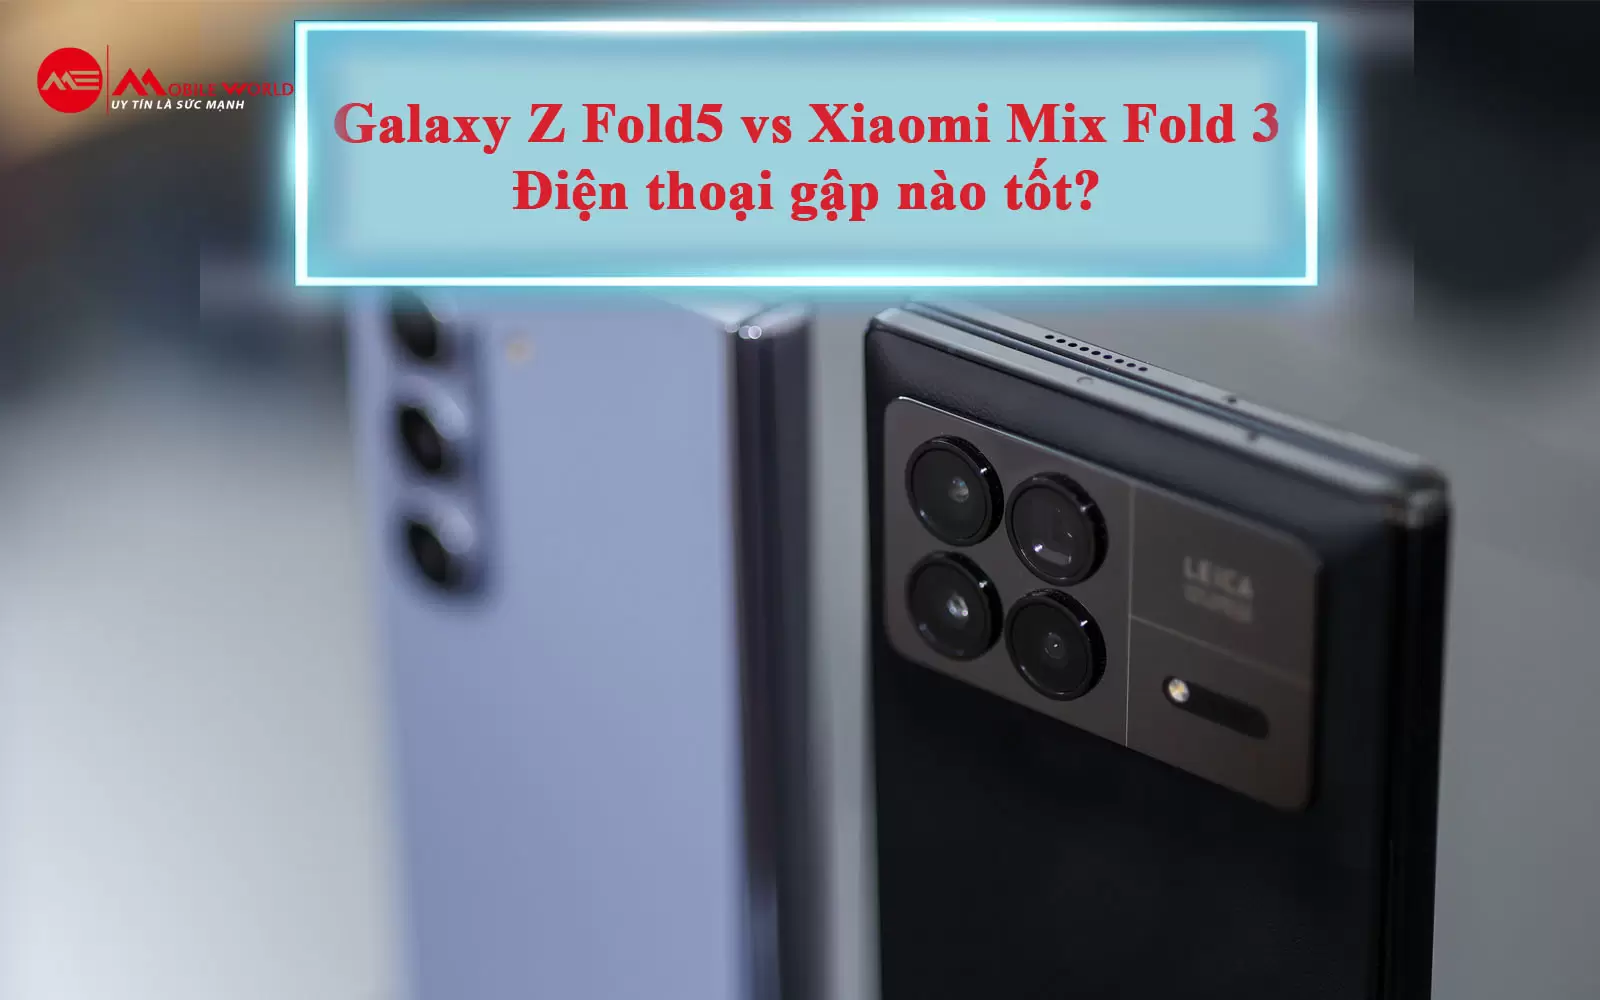 Galaxy Z Fold5 vs Xiaomi Mix Fold 3: Điện thoại gập nào tốt